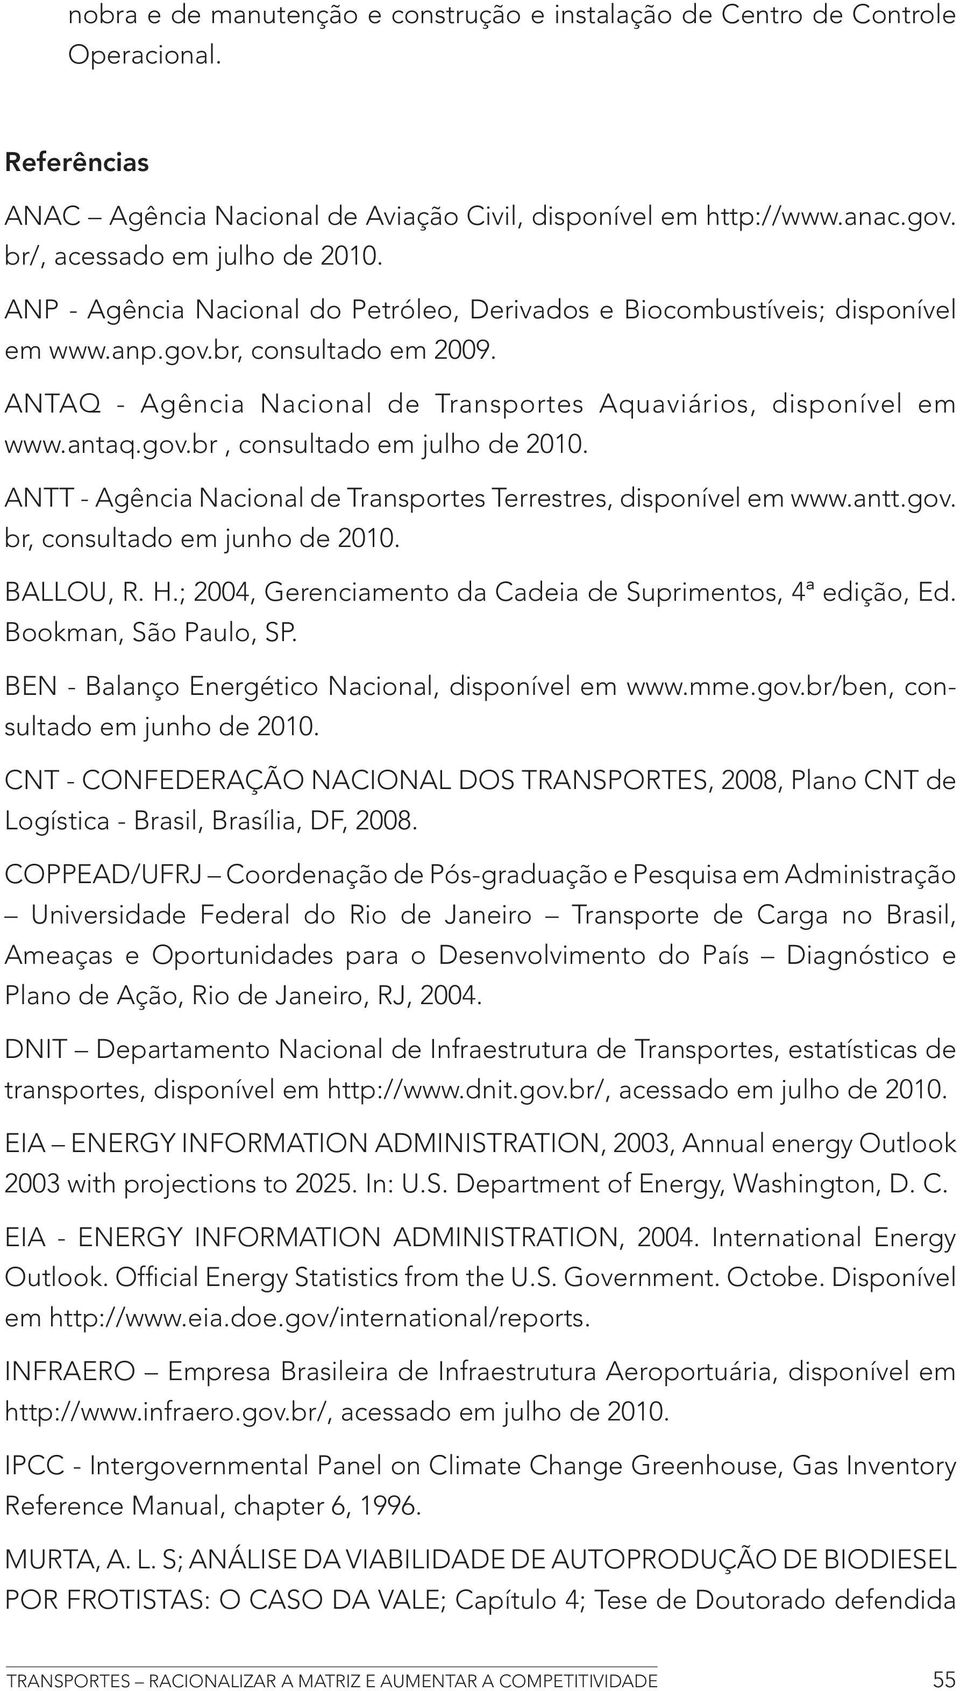 ANTAQ - Agência Nacional de Transportes Aquaviários, disponível em www.antaq.gov.br, consultado em julho de 2010. ANTT - Agência Nacional de Transportes Terrestres, disponível em www.antt.gov. br, consultado em junho de 2010.